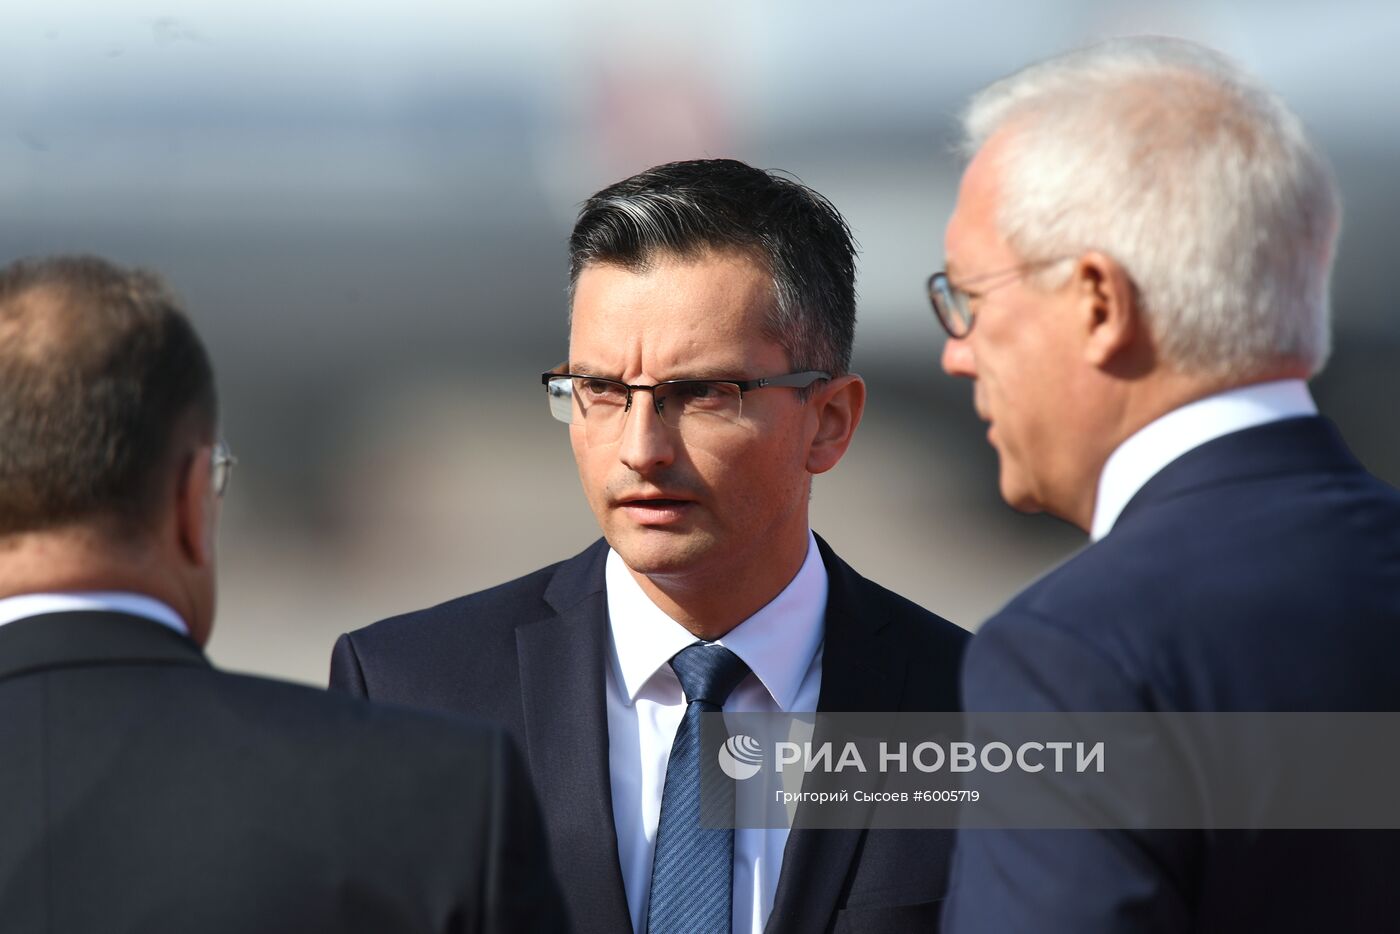 Прилет премьер-министра Словении М. Шареца в Москву 